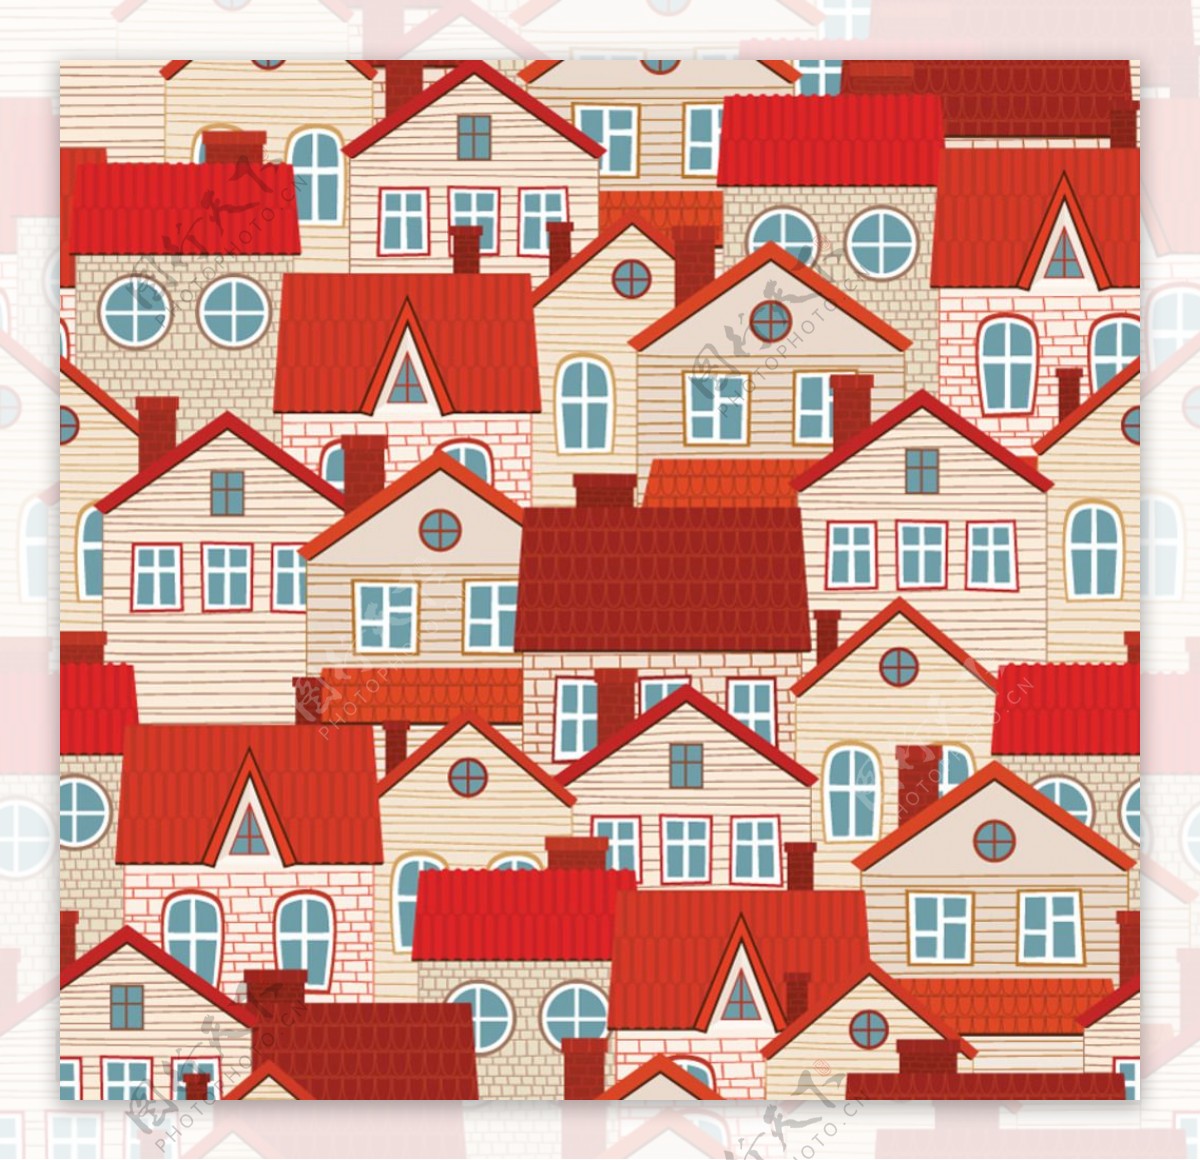 红色屋顶房屋背景矢量素材